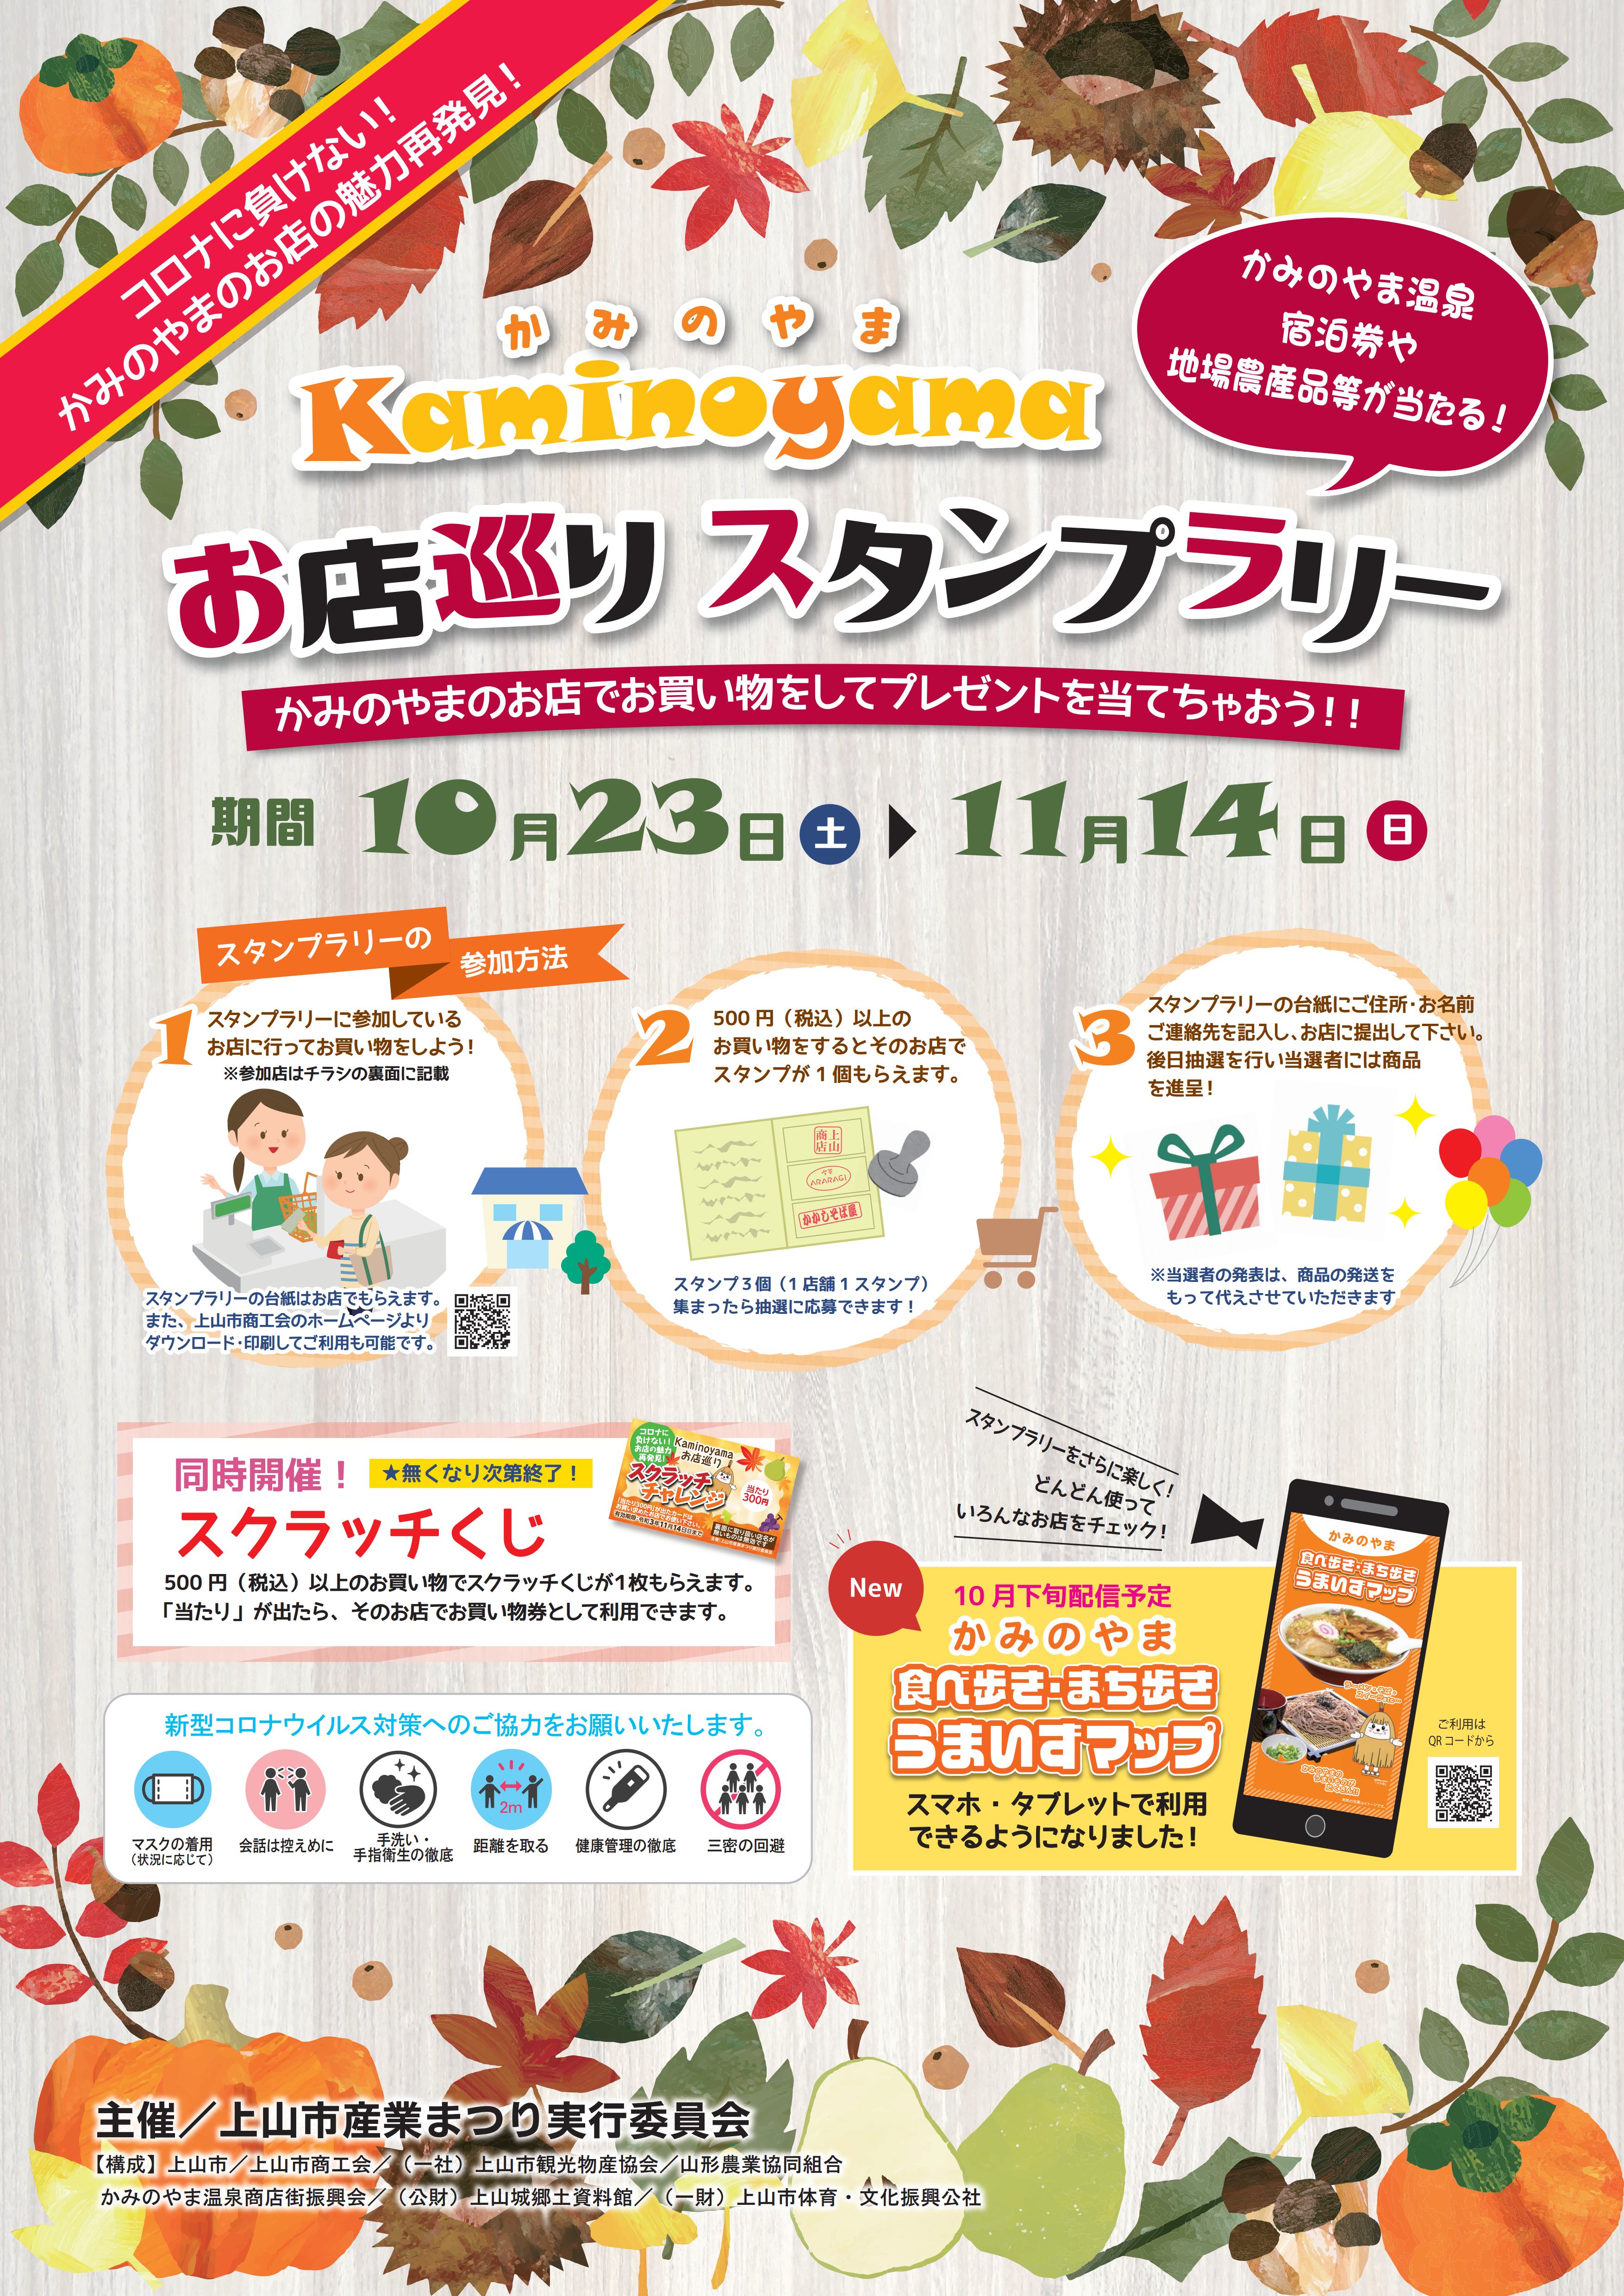 【10月23日スタート】『Kaminoyama お店巡り スタンプラリー』のお知らせ